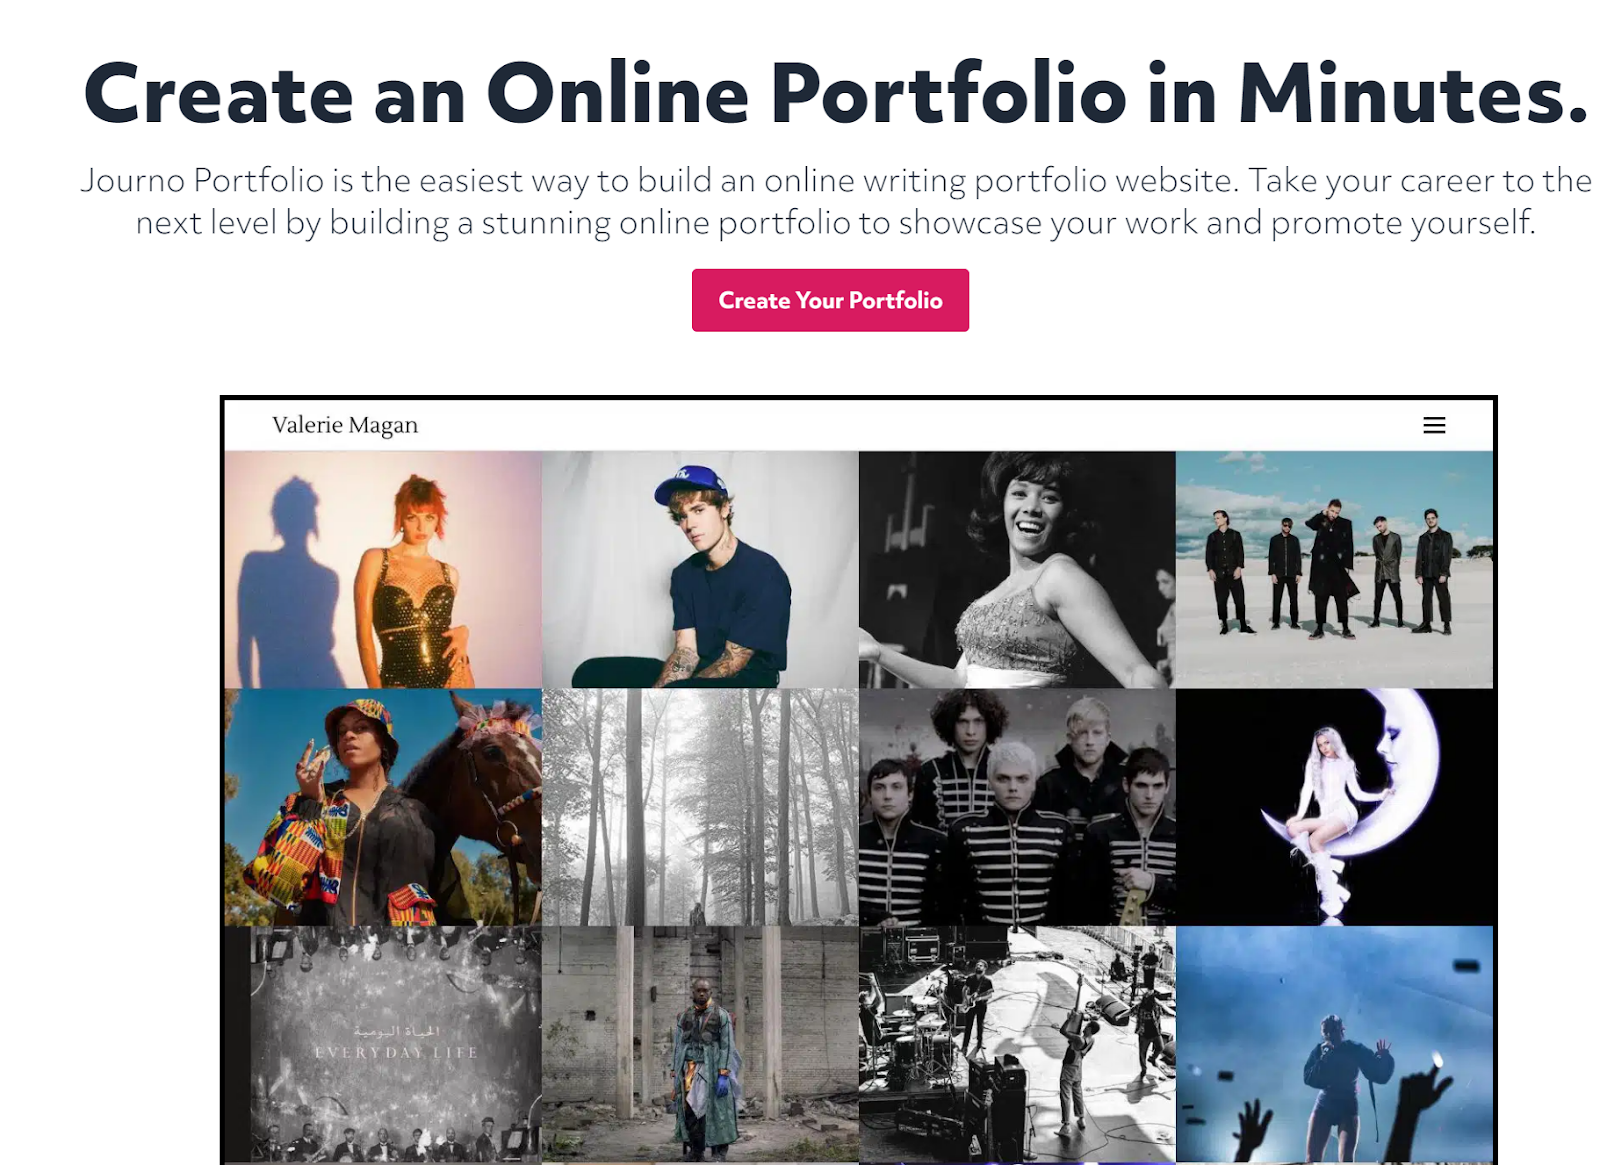 Journo Portfolio home page for building a portfolio website